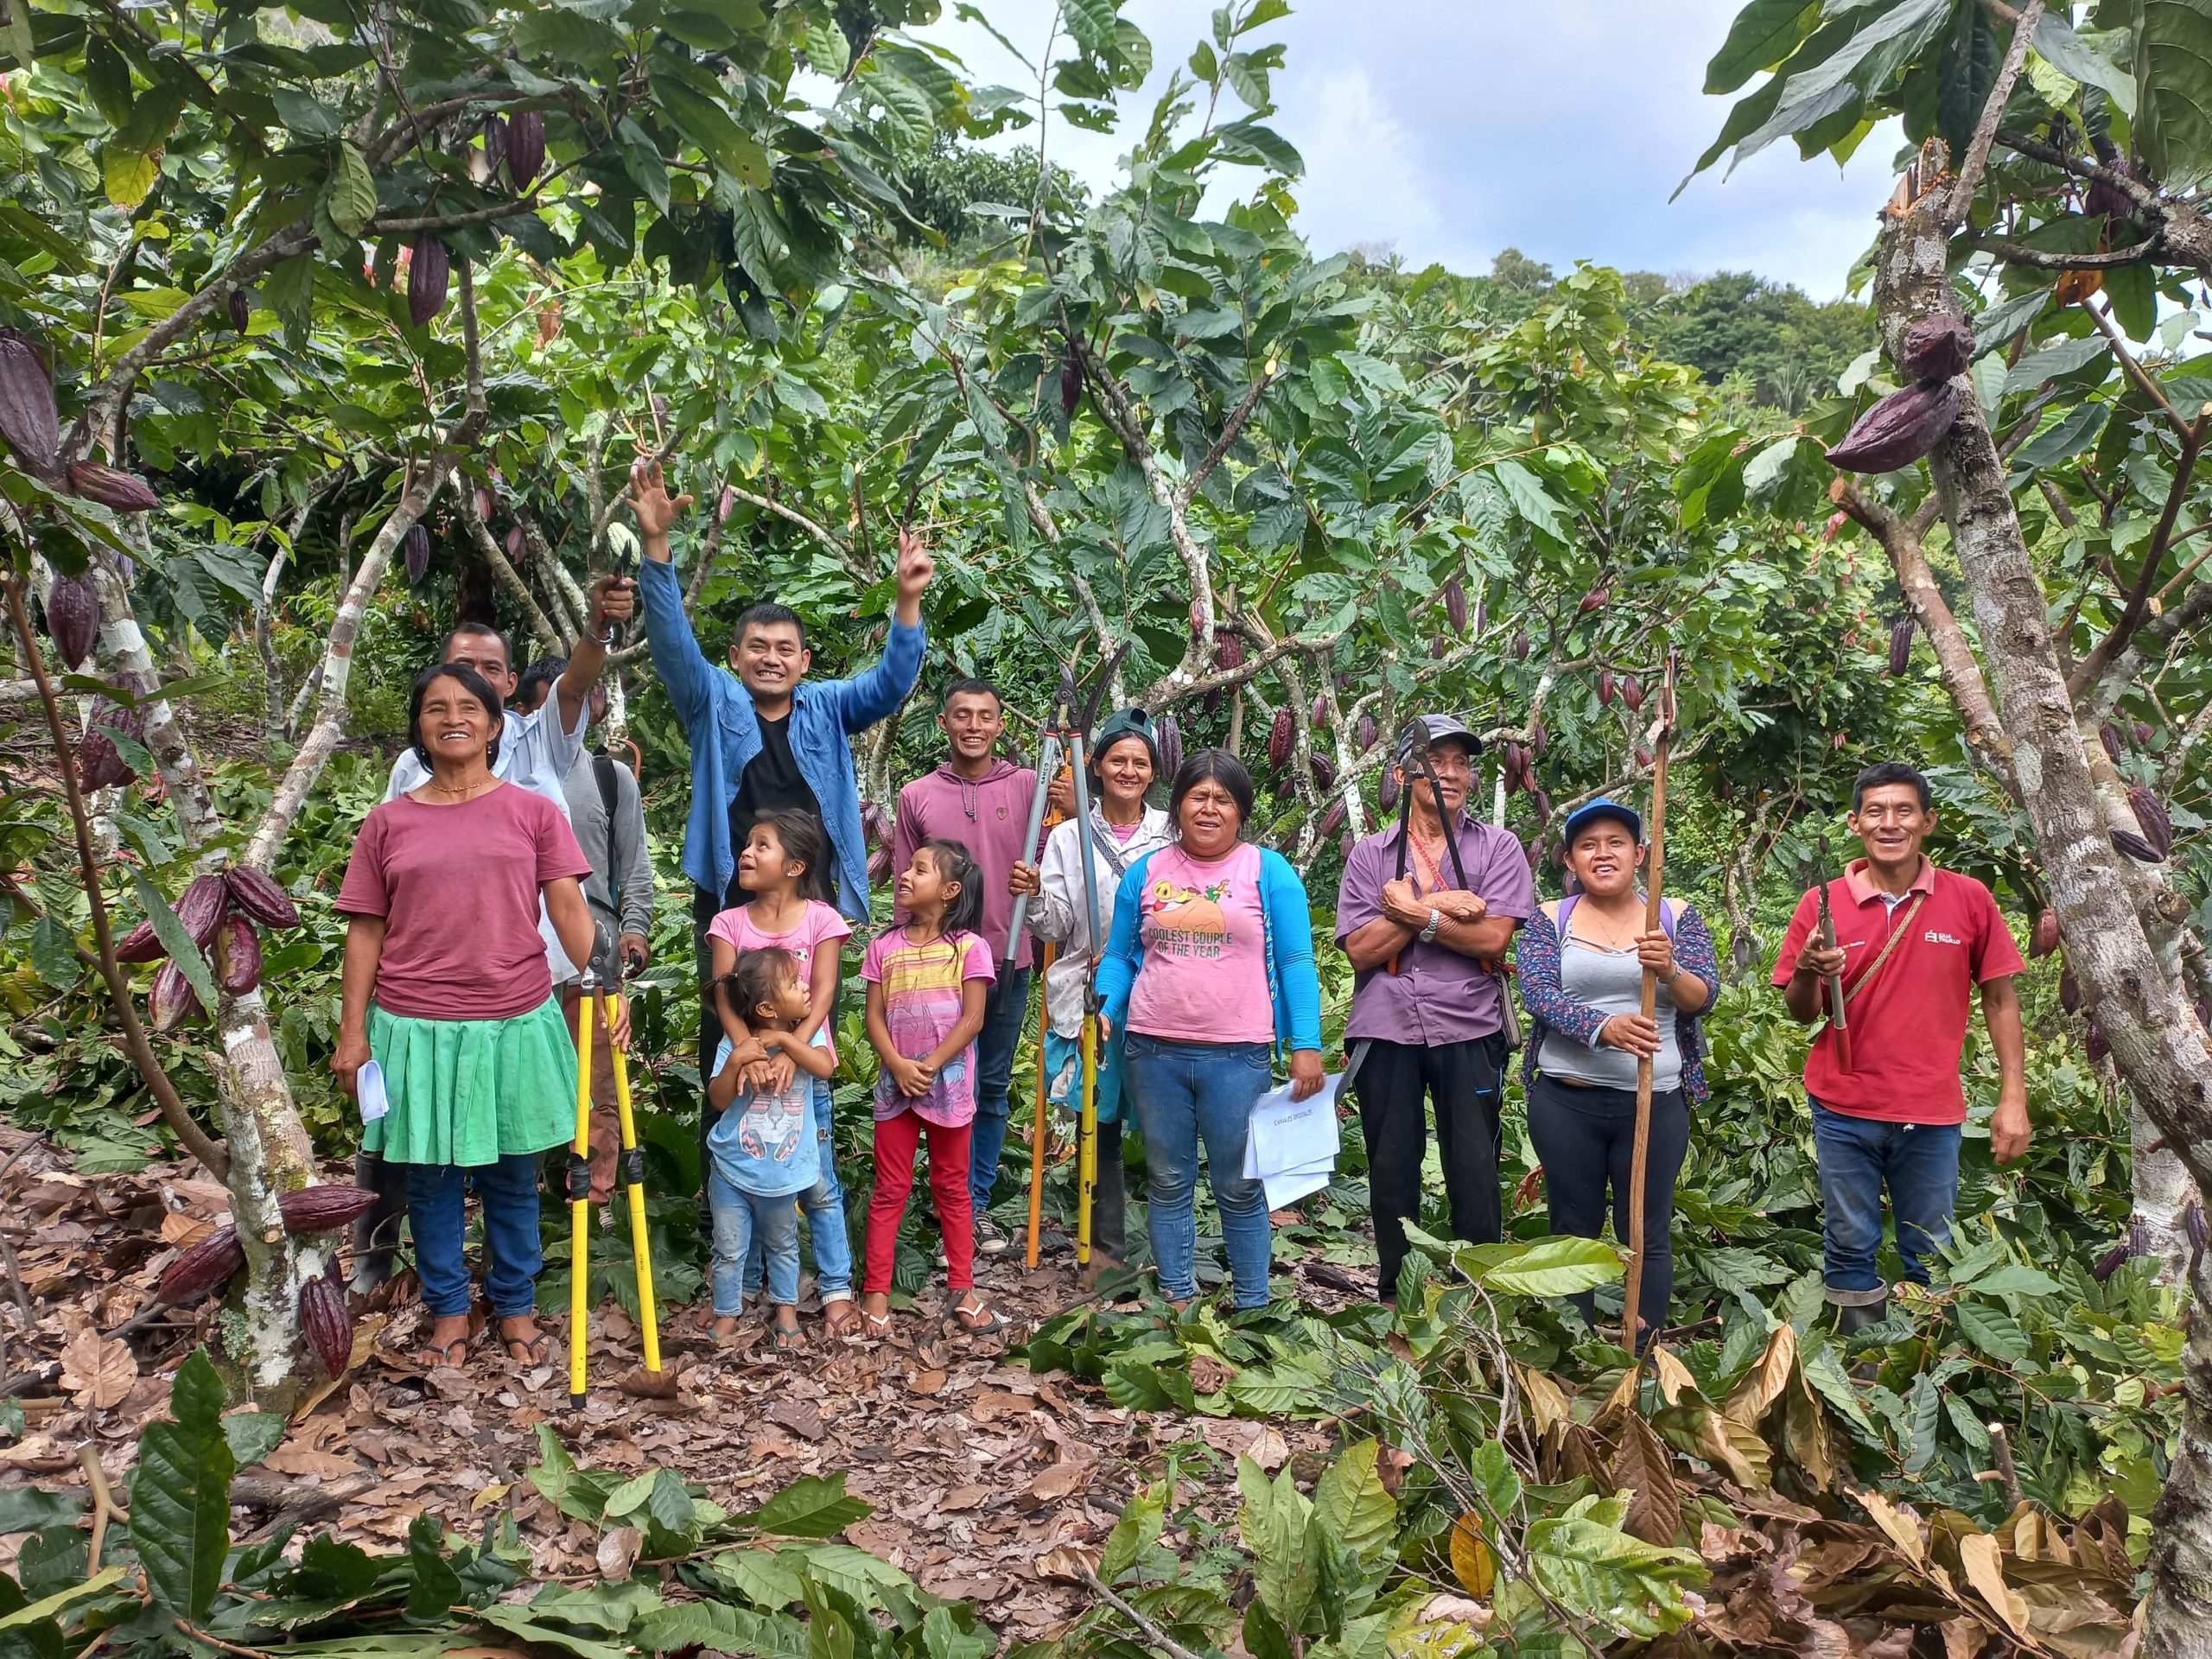 Fomento de la cadena de valor del cacao, de forma sostenible, en áreas colindantes a la zona de amortiguamiento del Parque Nacional del Río Abiseo